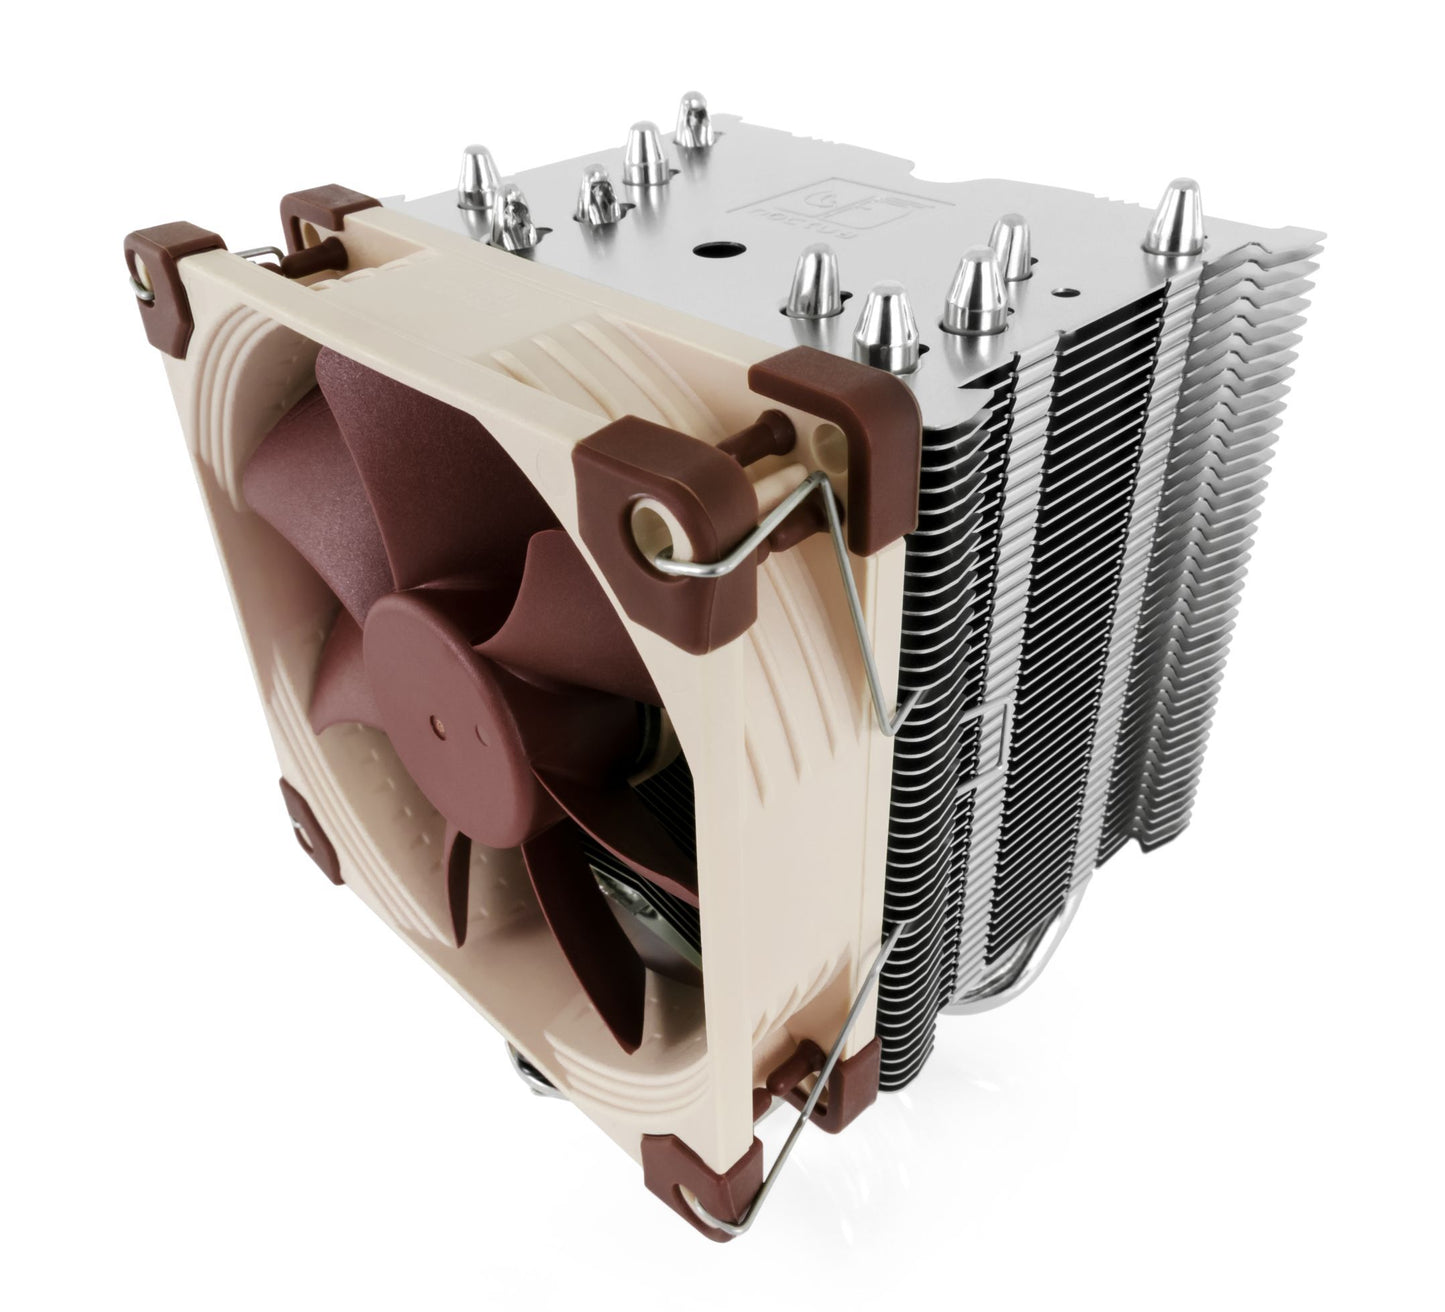 Noctua NH-U9S CPU Cooler